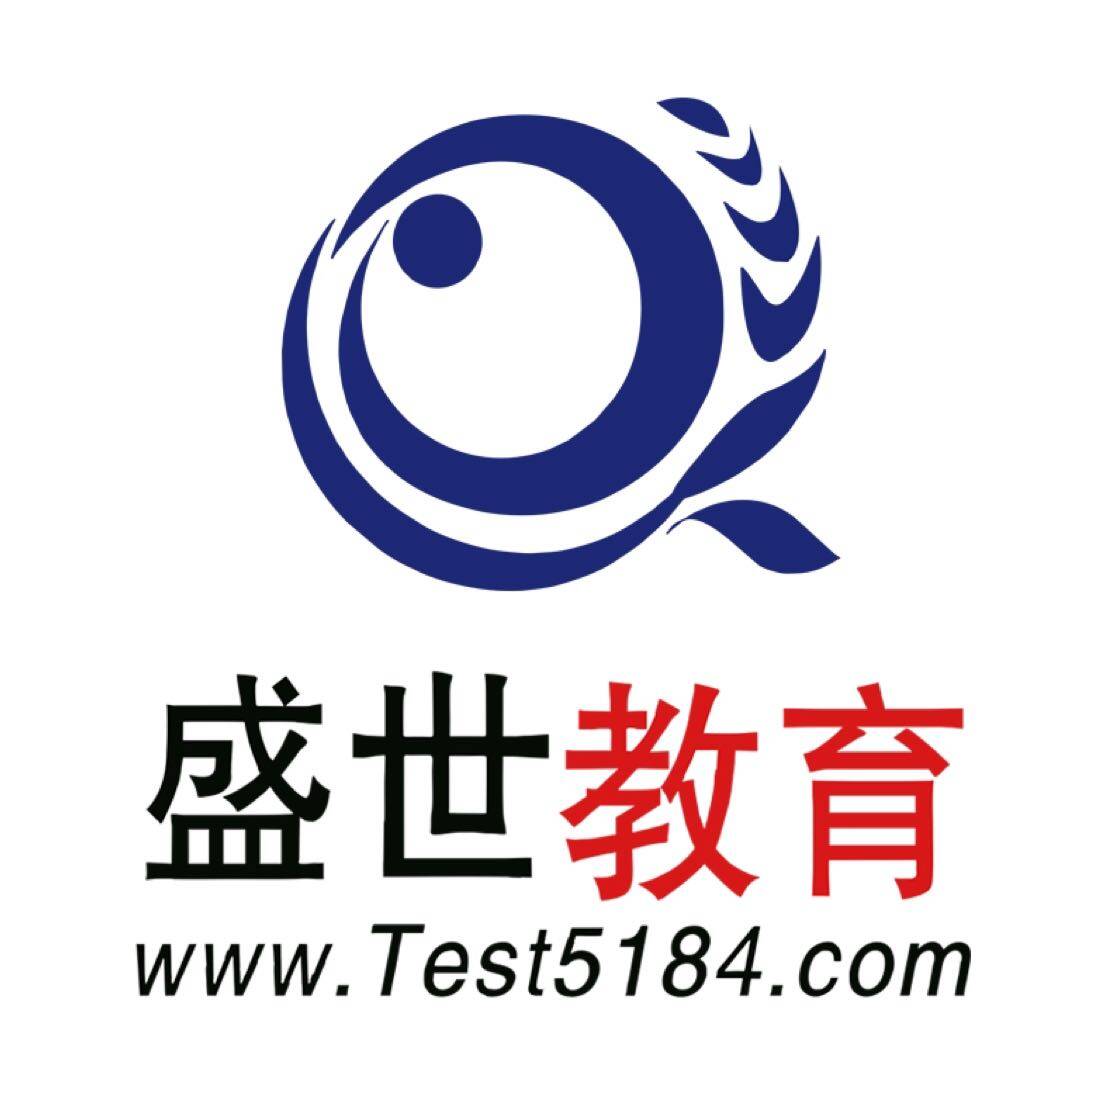 清远市华研教育咨询有限公司logo